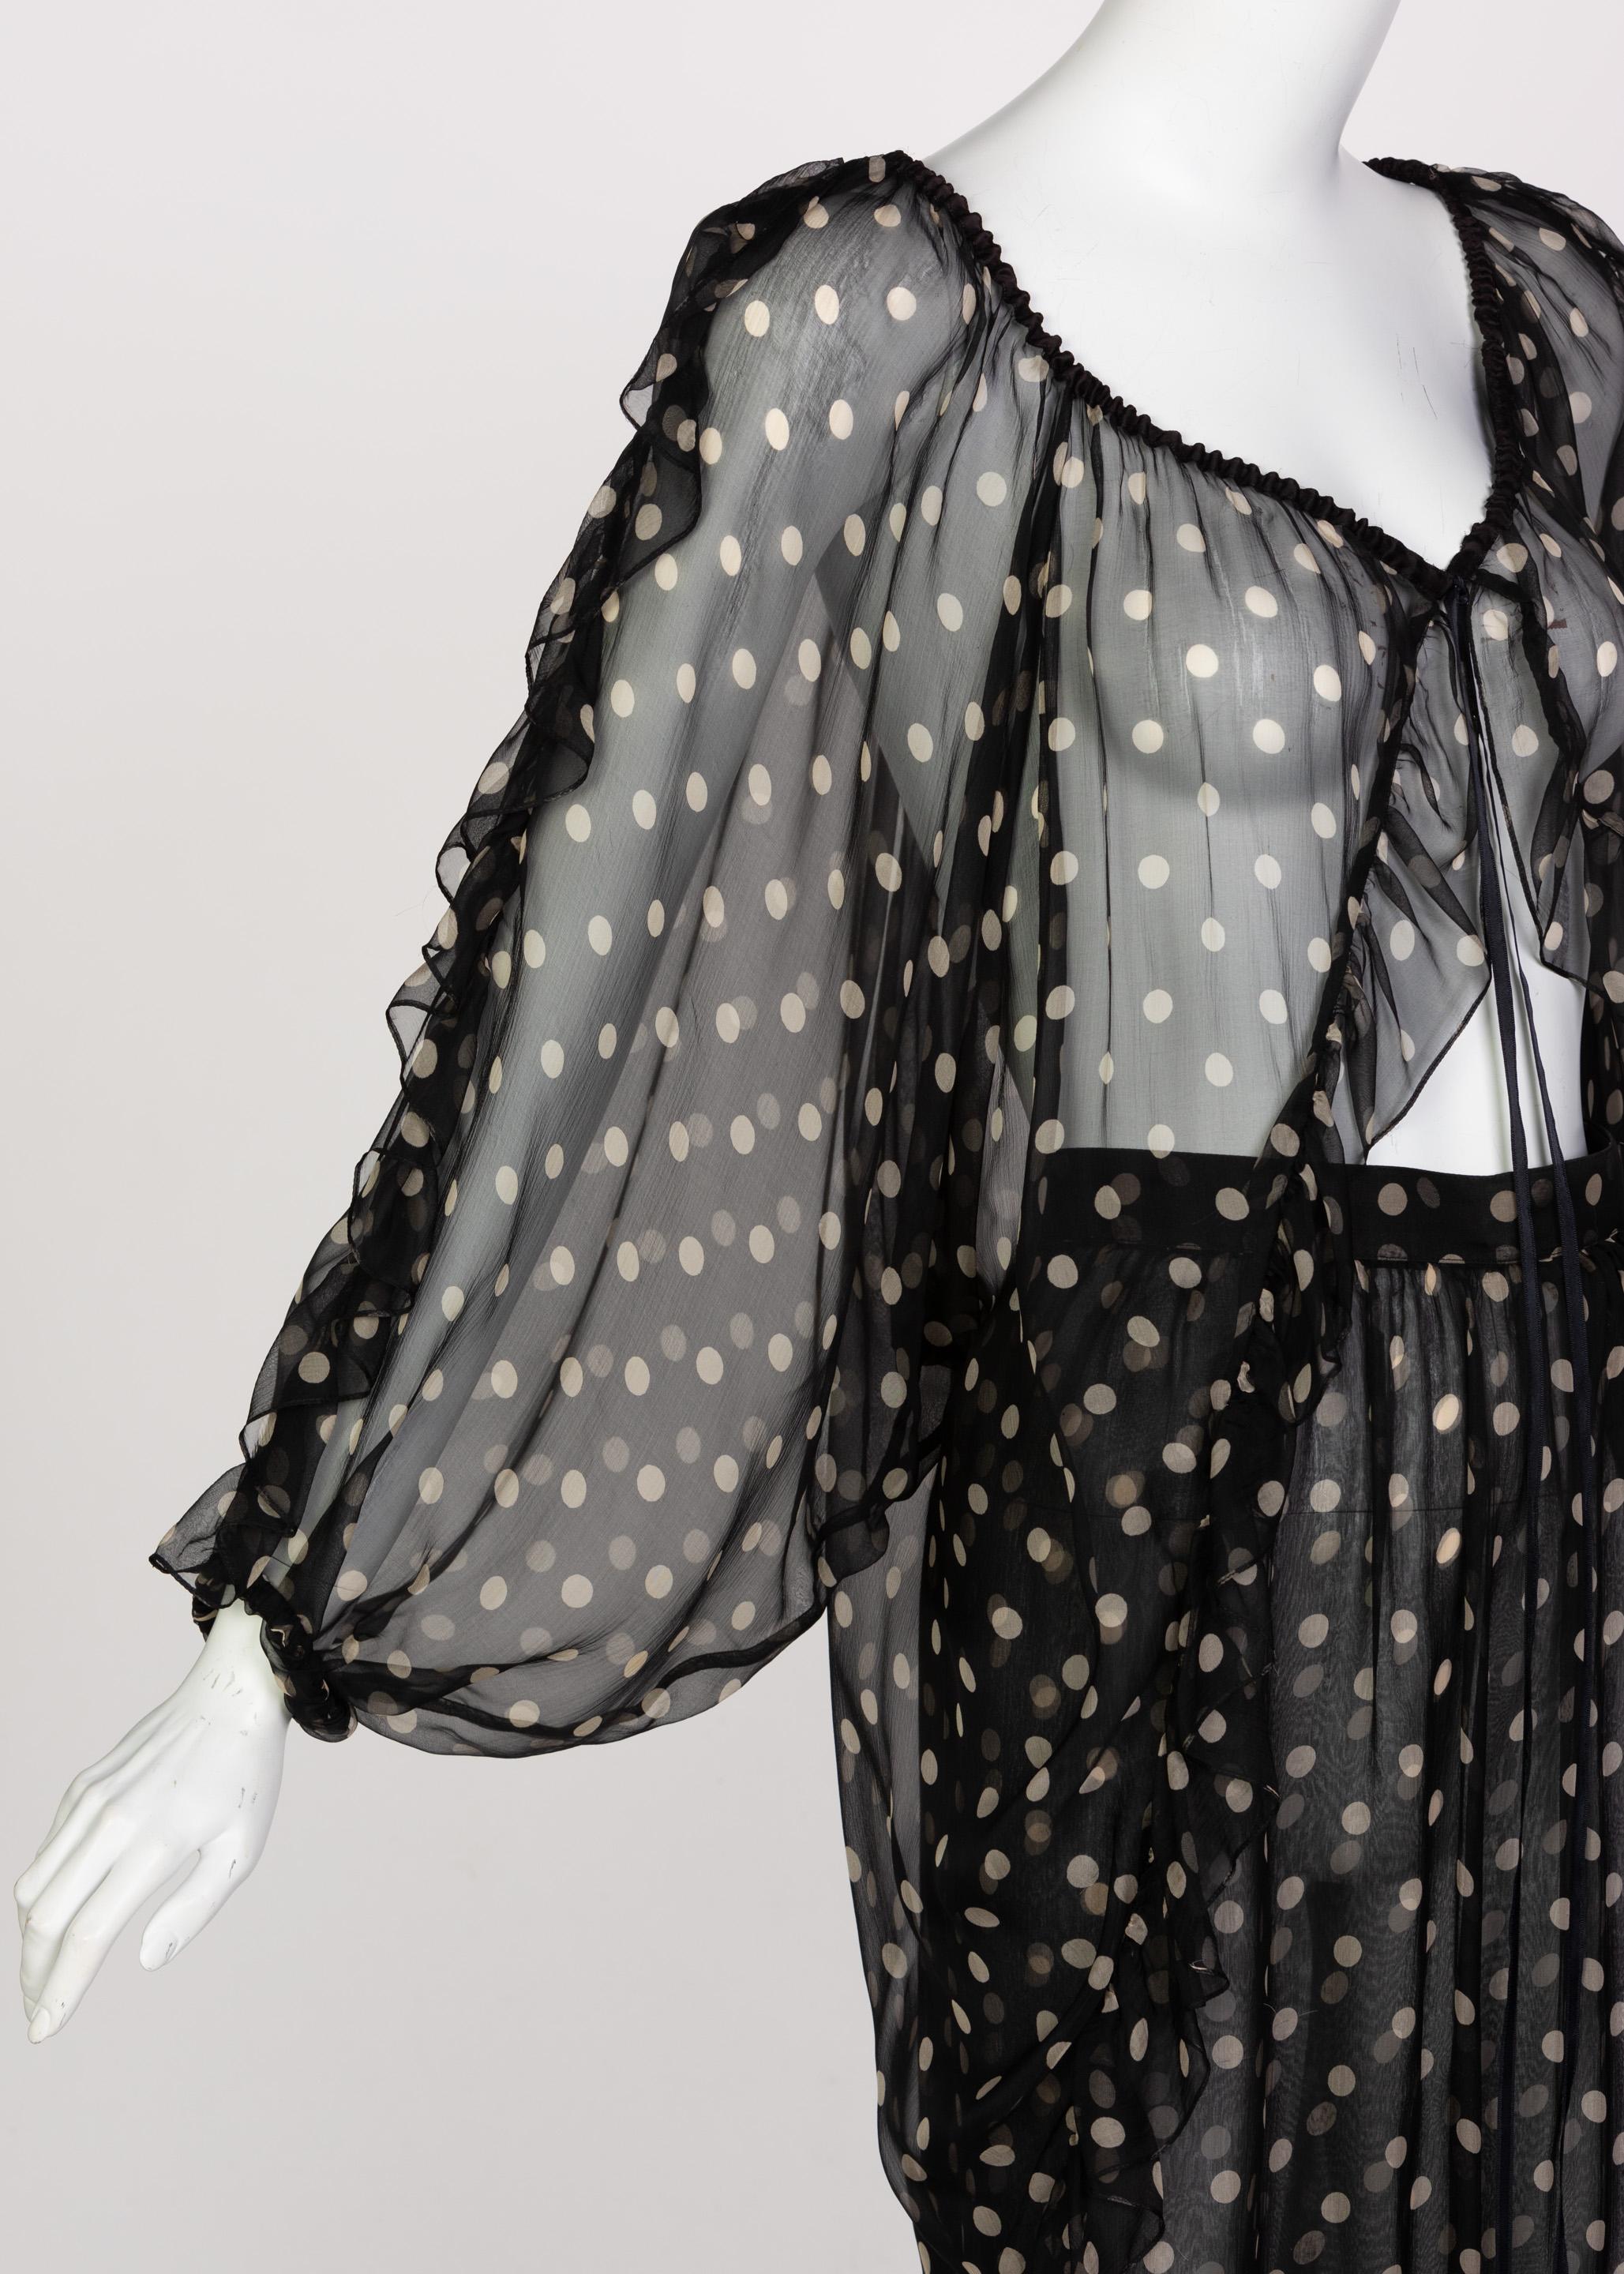  Yves Saint Laurent Black Beige Polka Dot Ruffle Jacket Top Skirt Set YSL 1980s 6